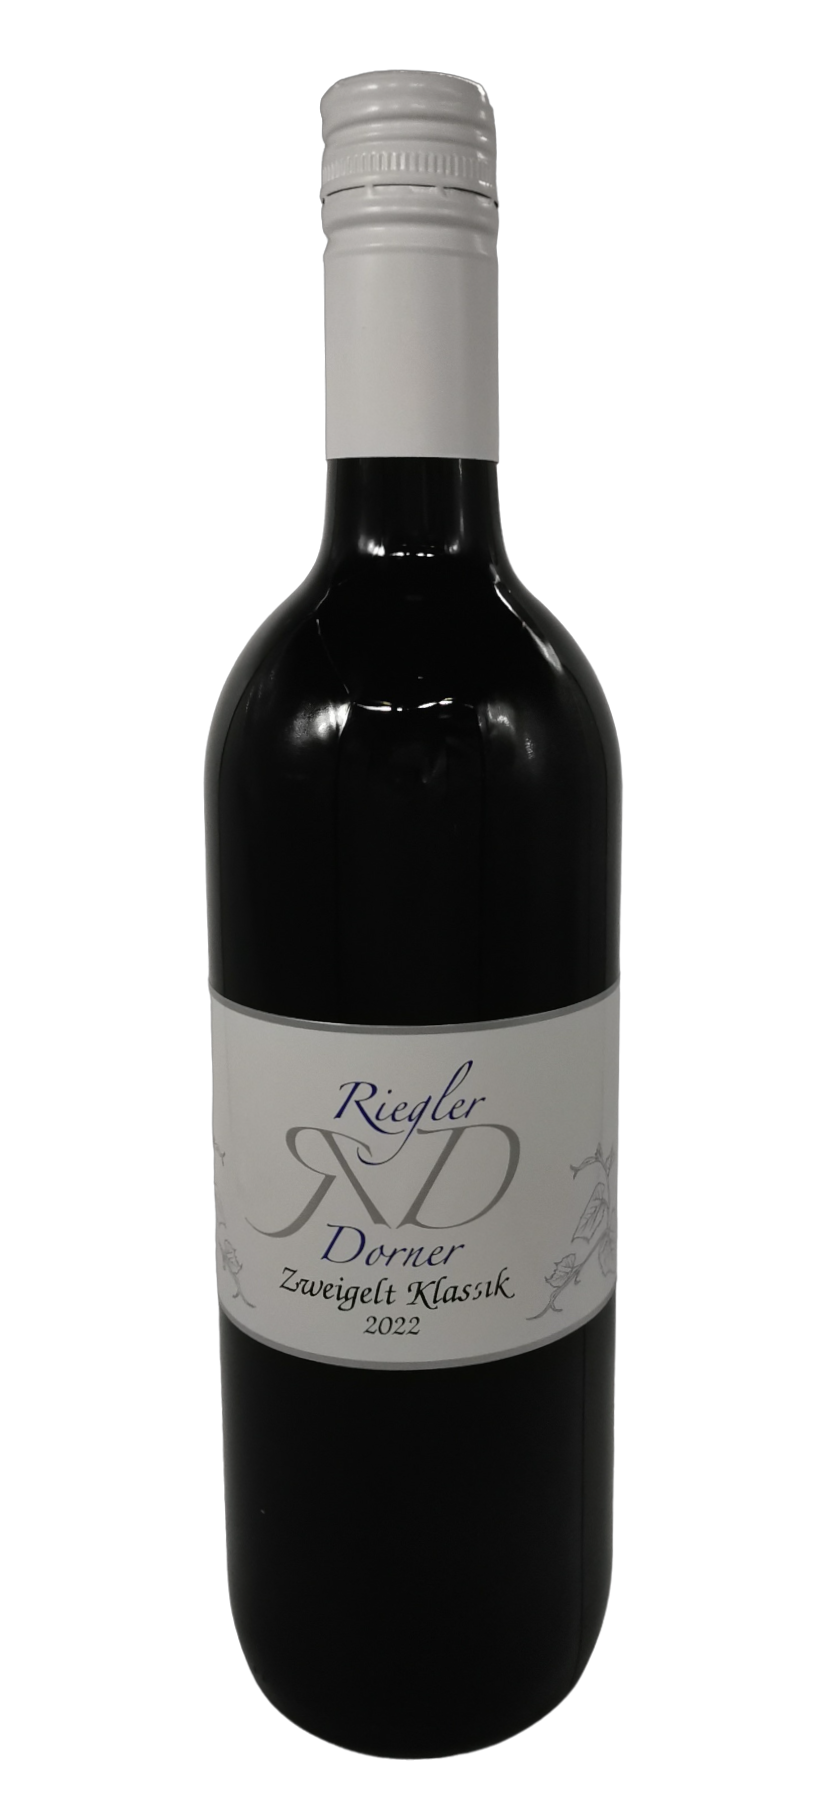 Weinbau Riegler-Dorner Produkt-Beispiele Zweigelt Klassik